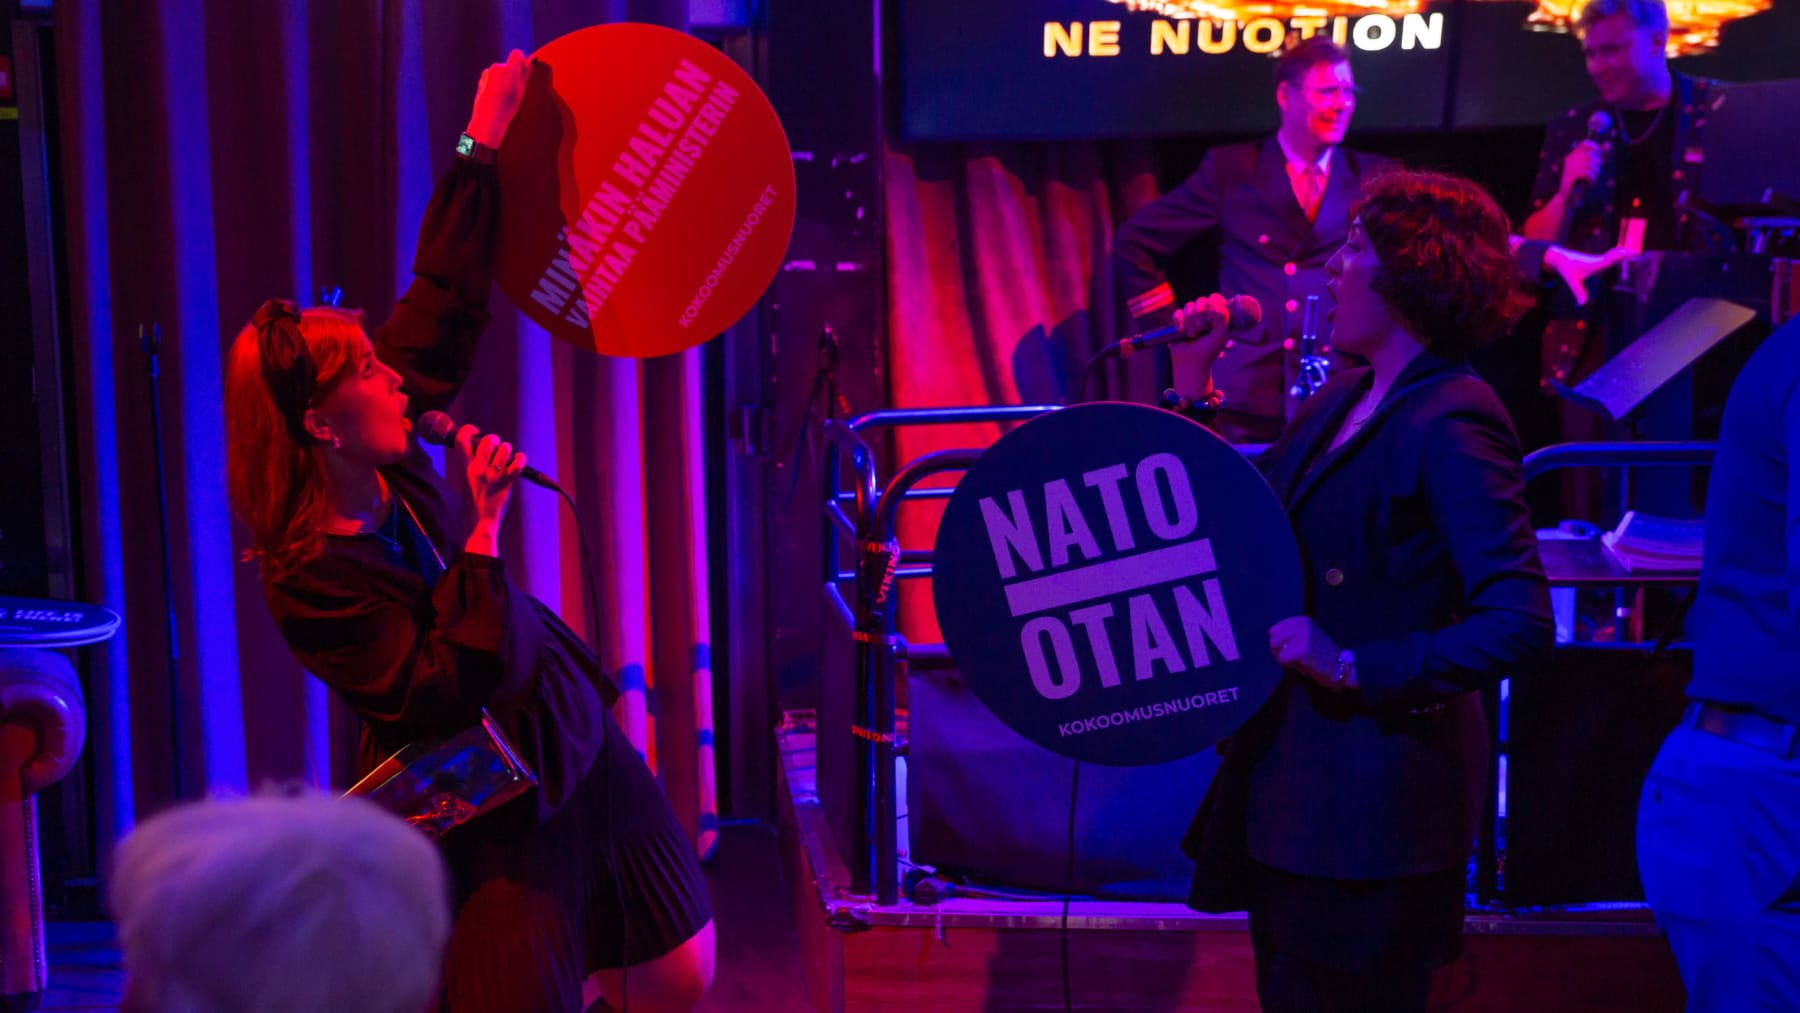 Kansanedustajaehdokas Teresa Rautapää Lahdesta ja Päivi Lindqvist Hämeenlinnasta laulavat Kokoomuksen risteilyllä karaokessa. Molemmilla on käsissään kokoomusnuorten iskulausekylttejä joissa lukee: "Minäkin haluan vaihtaa pääminiserin" ja "NATO - OTAN".